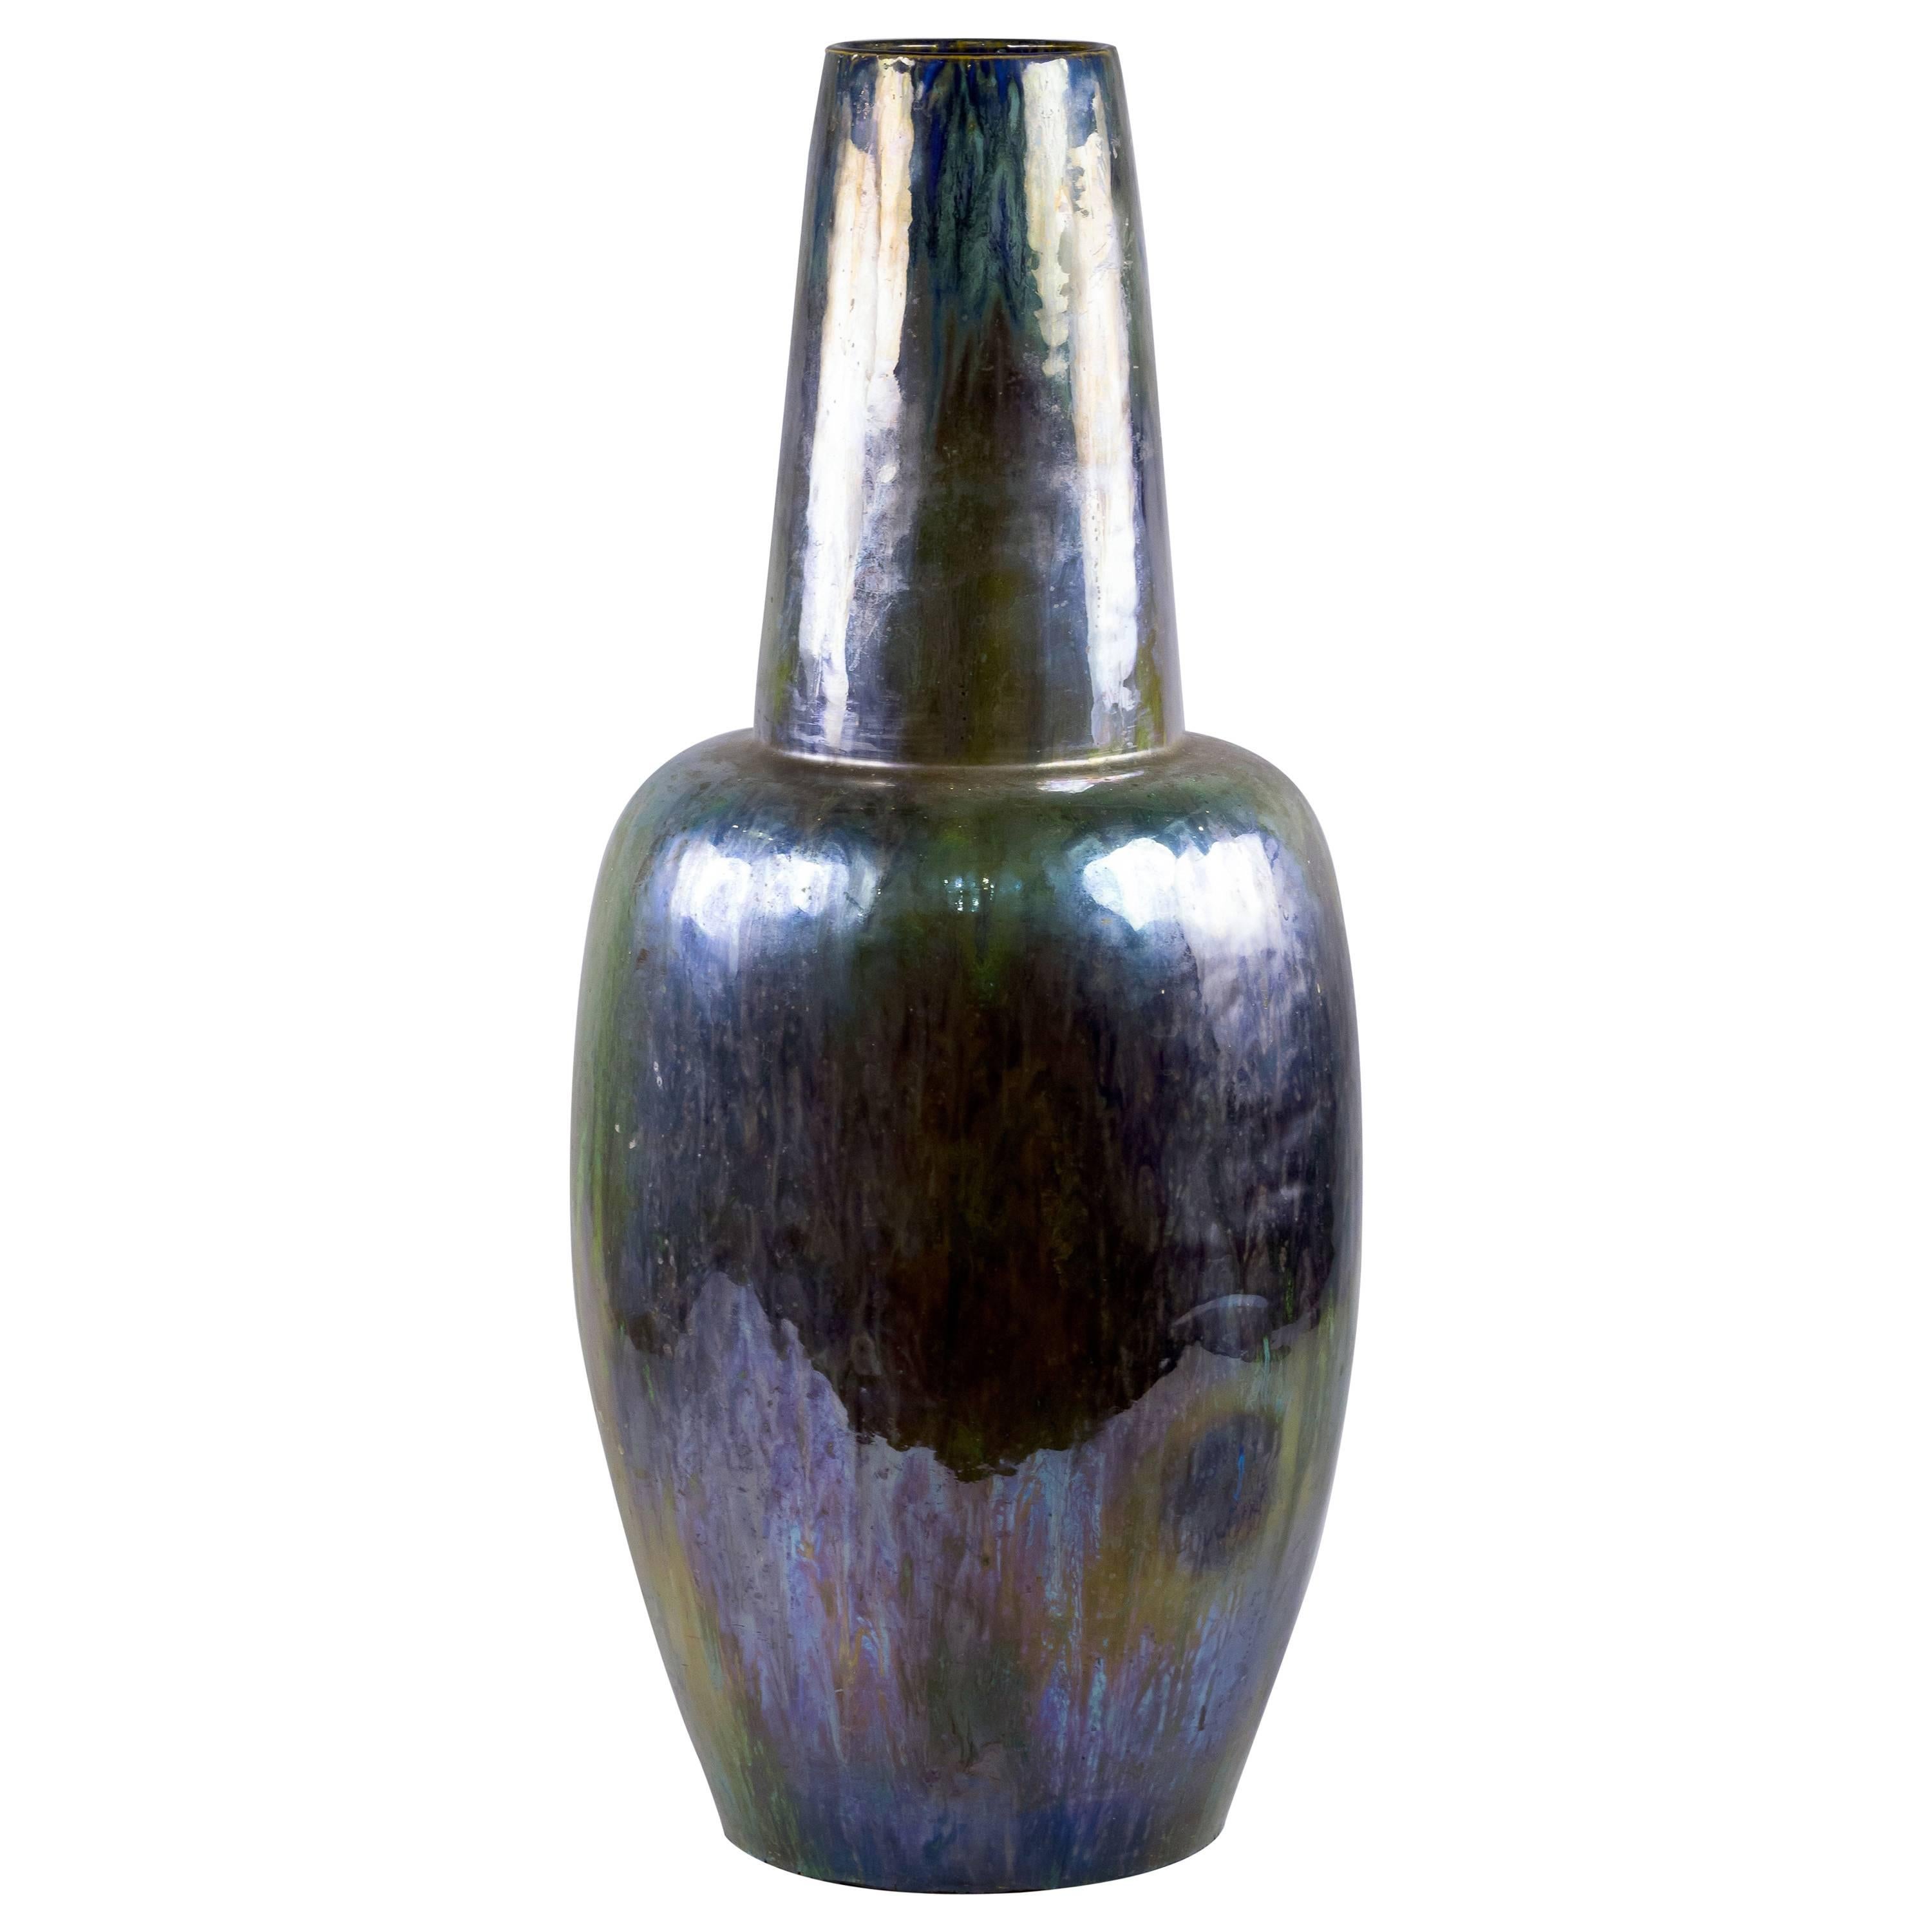 Grand vase flambe irisé en poterie française de style Art nouveau, vers 1900